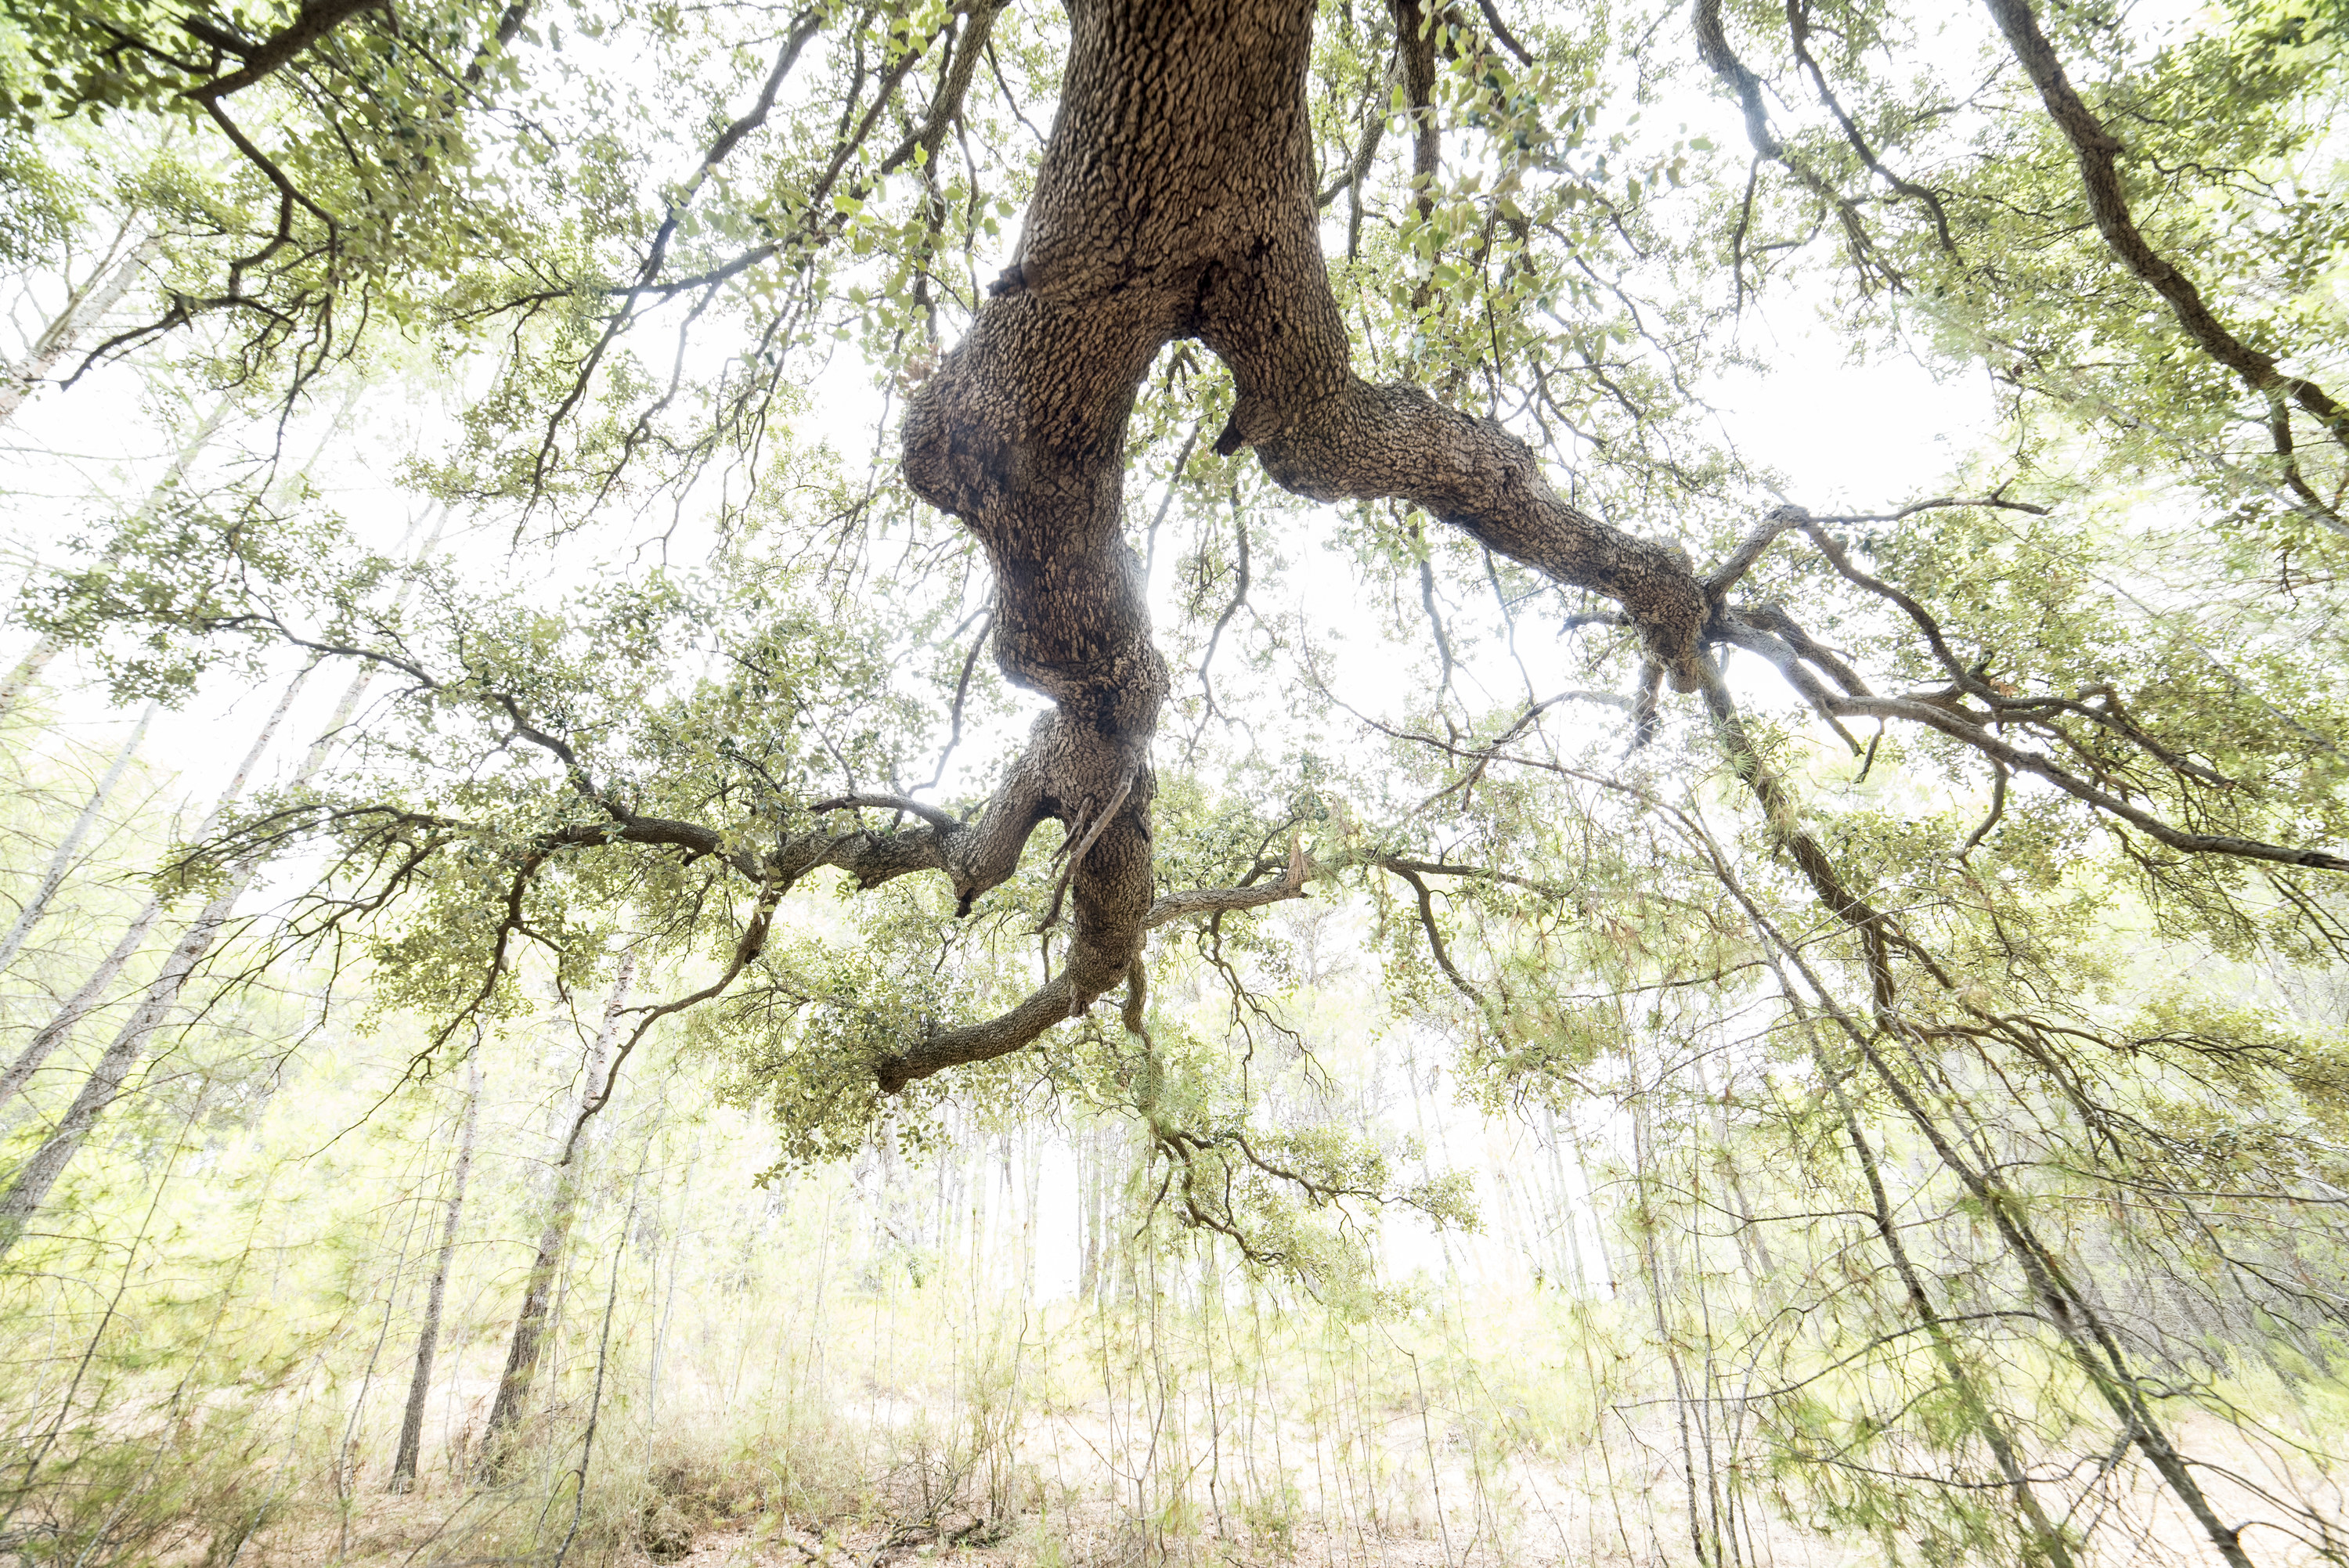 An oak tree